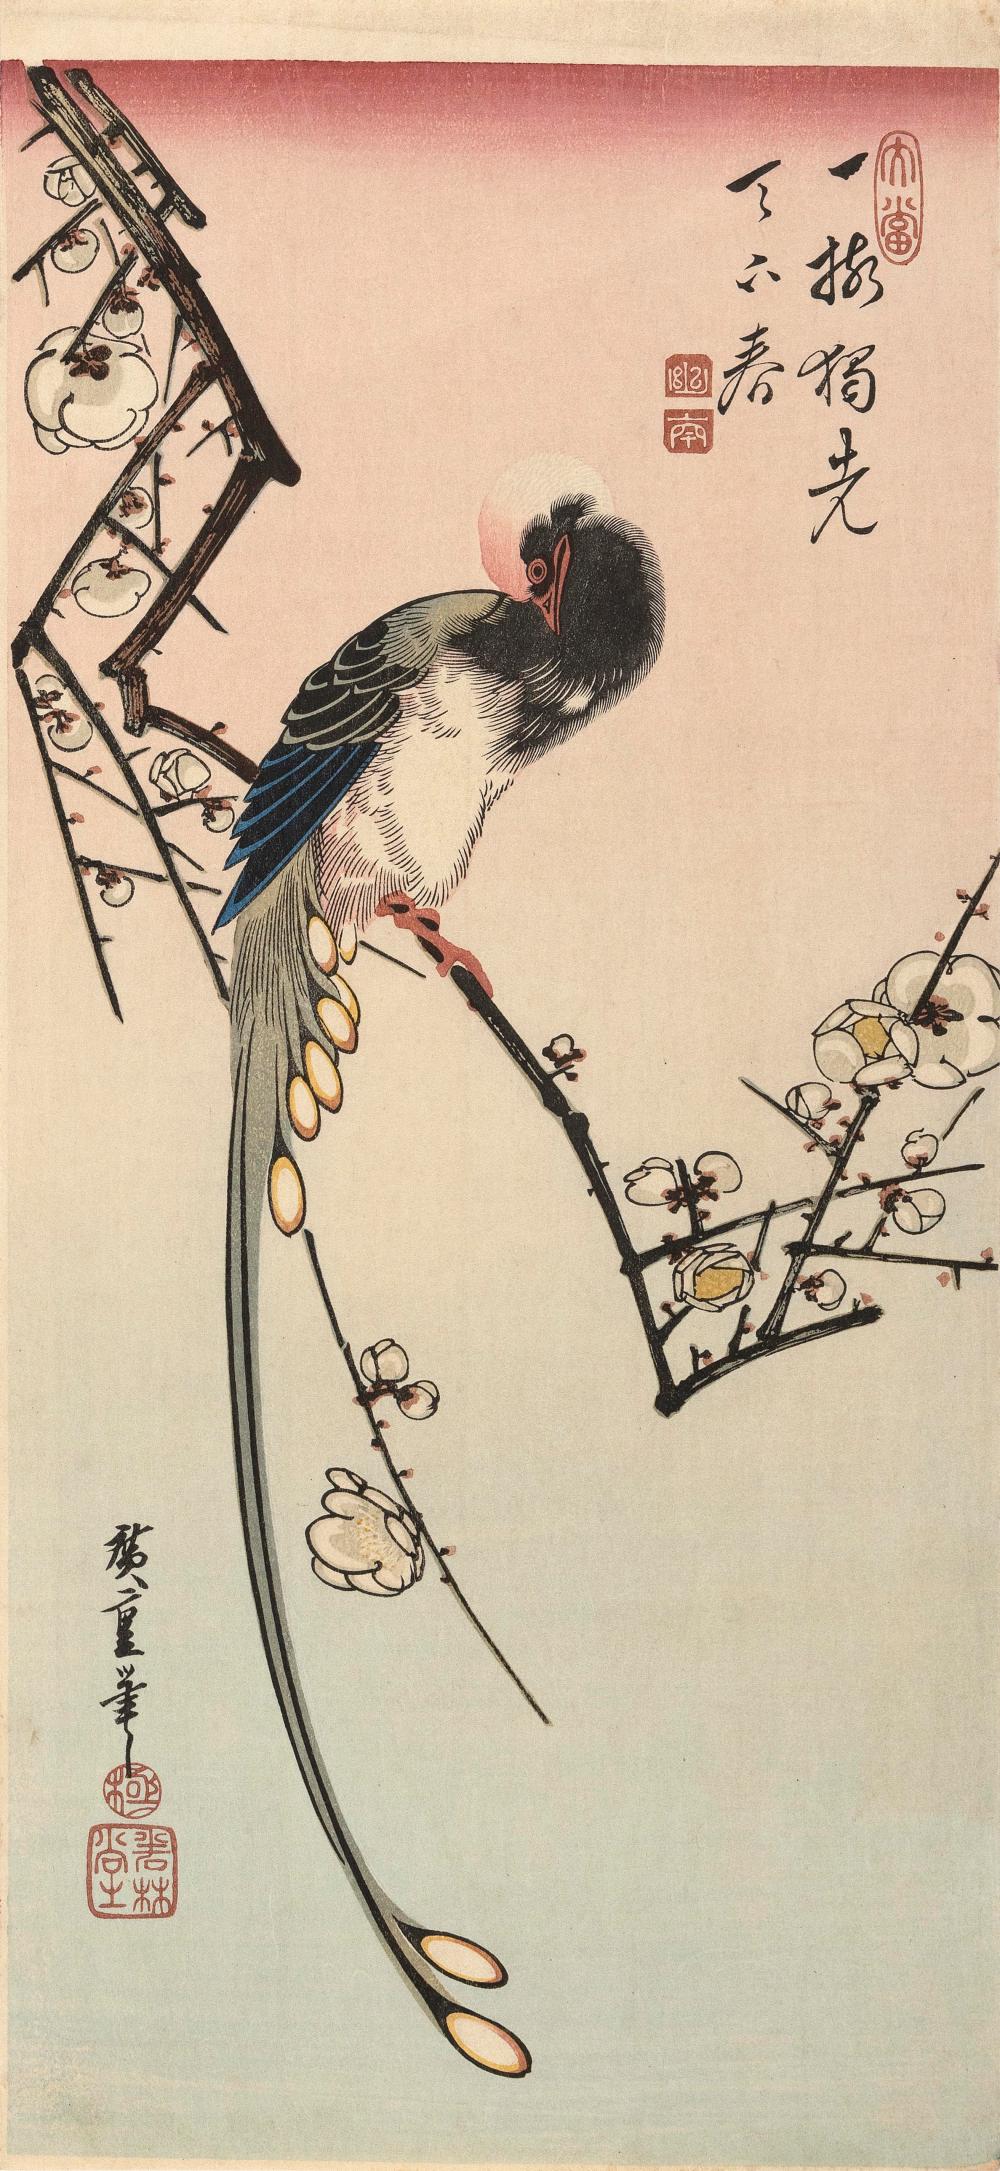 UTAGAWA HIROSHIGE (1797-1858) HOSOBANUTAGAWA